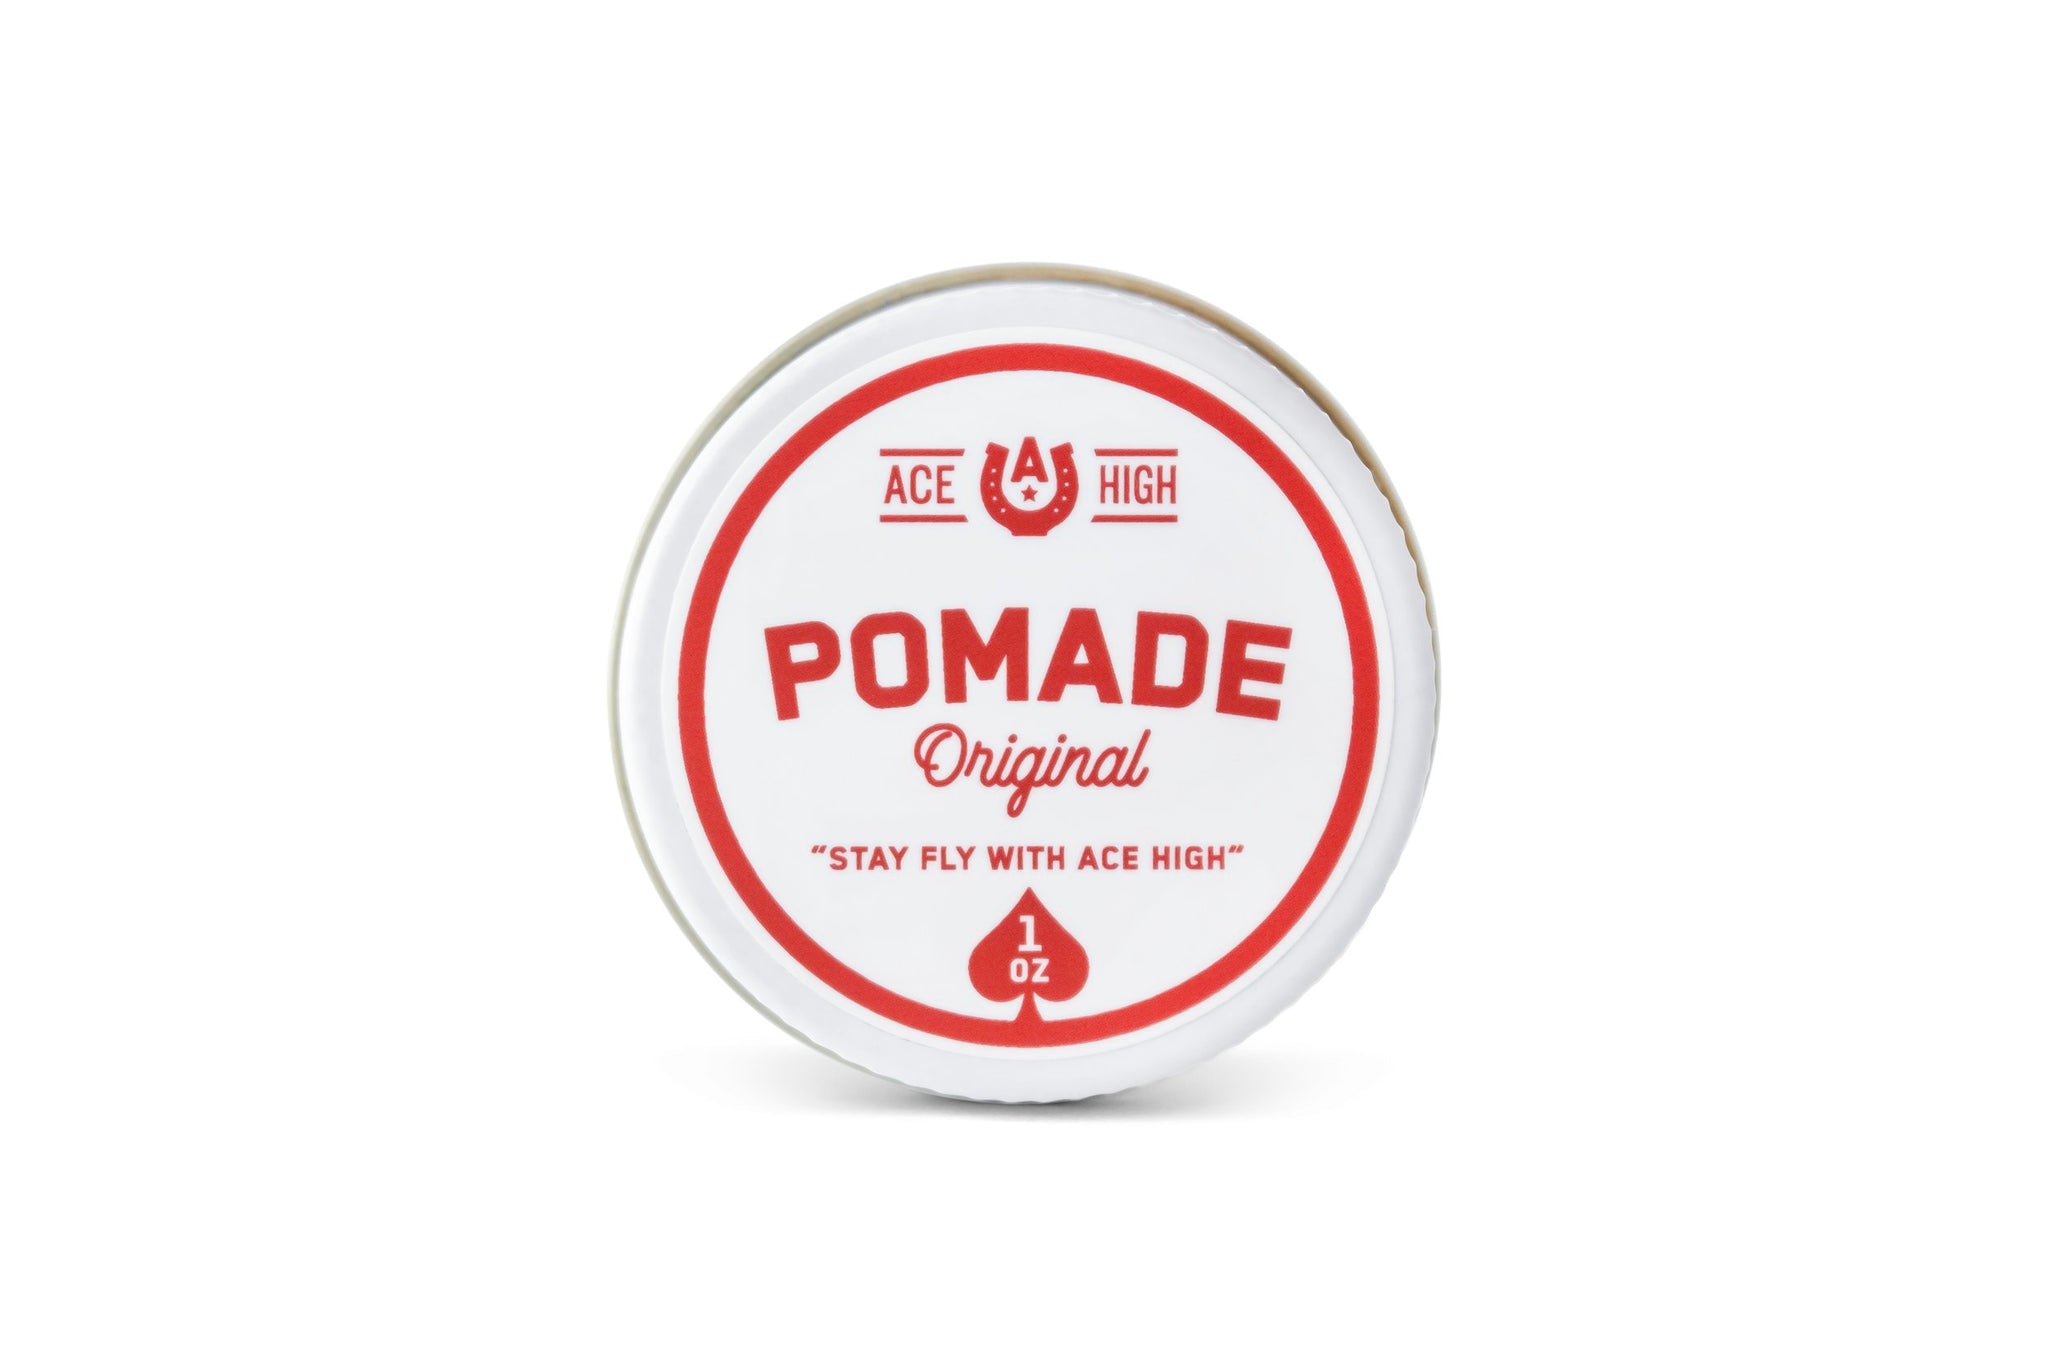 Original Pomade - 1 oz Travel Size